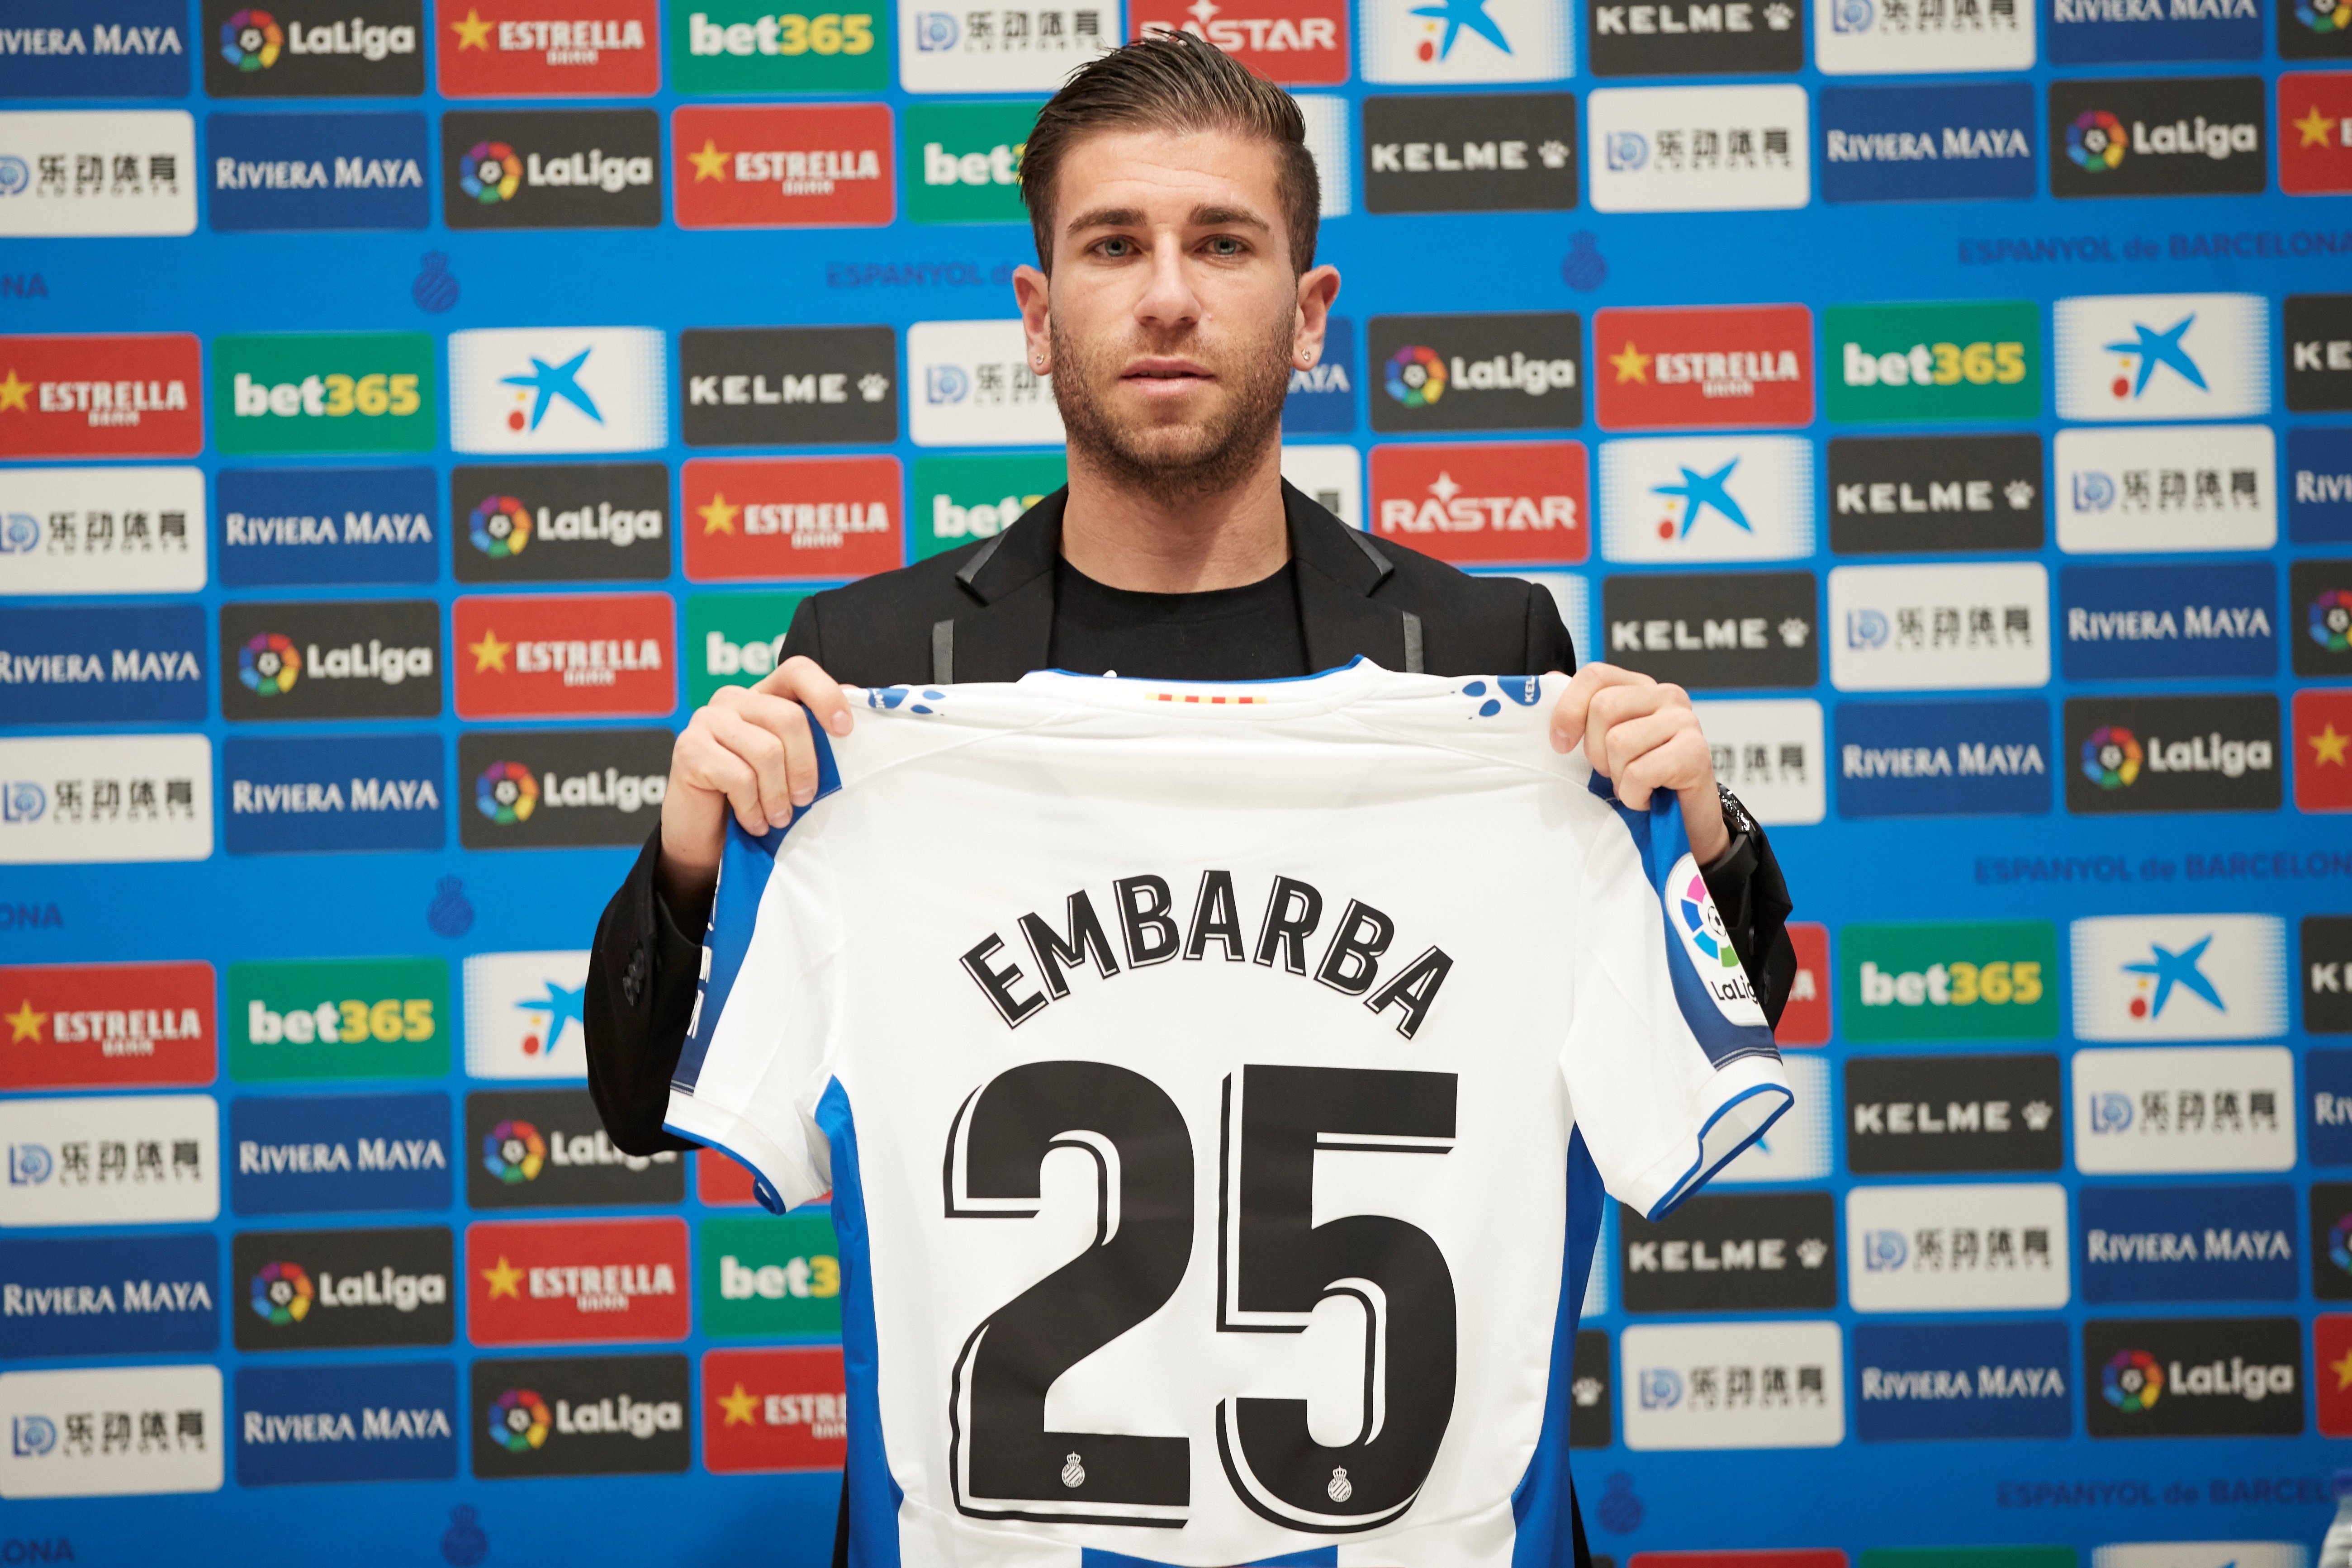 Embarba, tercer fitxatge de l'Espanyol el 2020